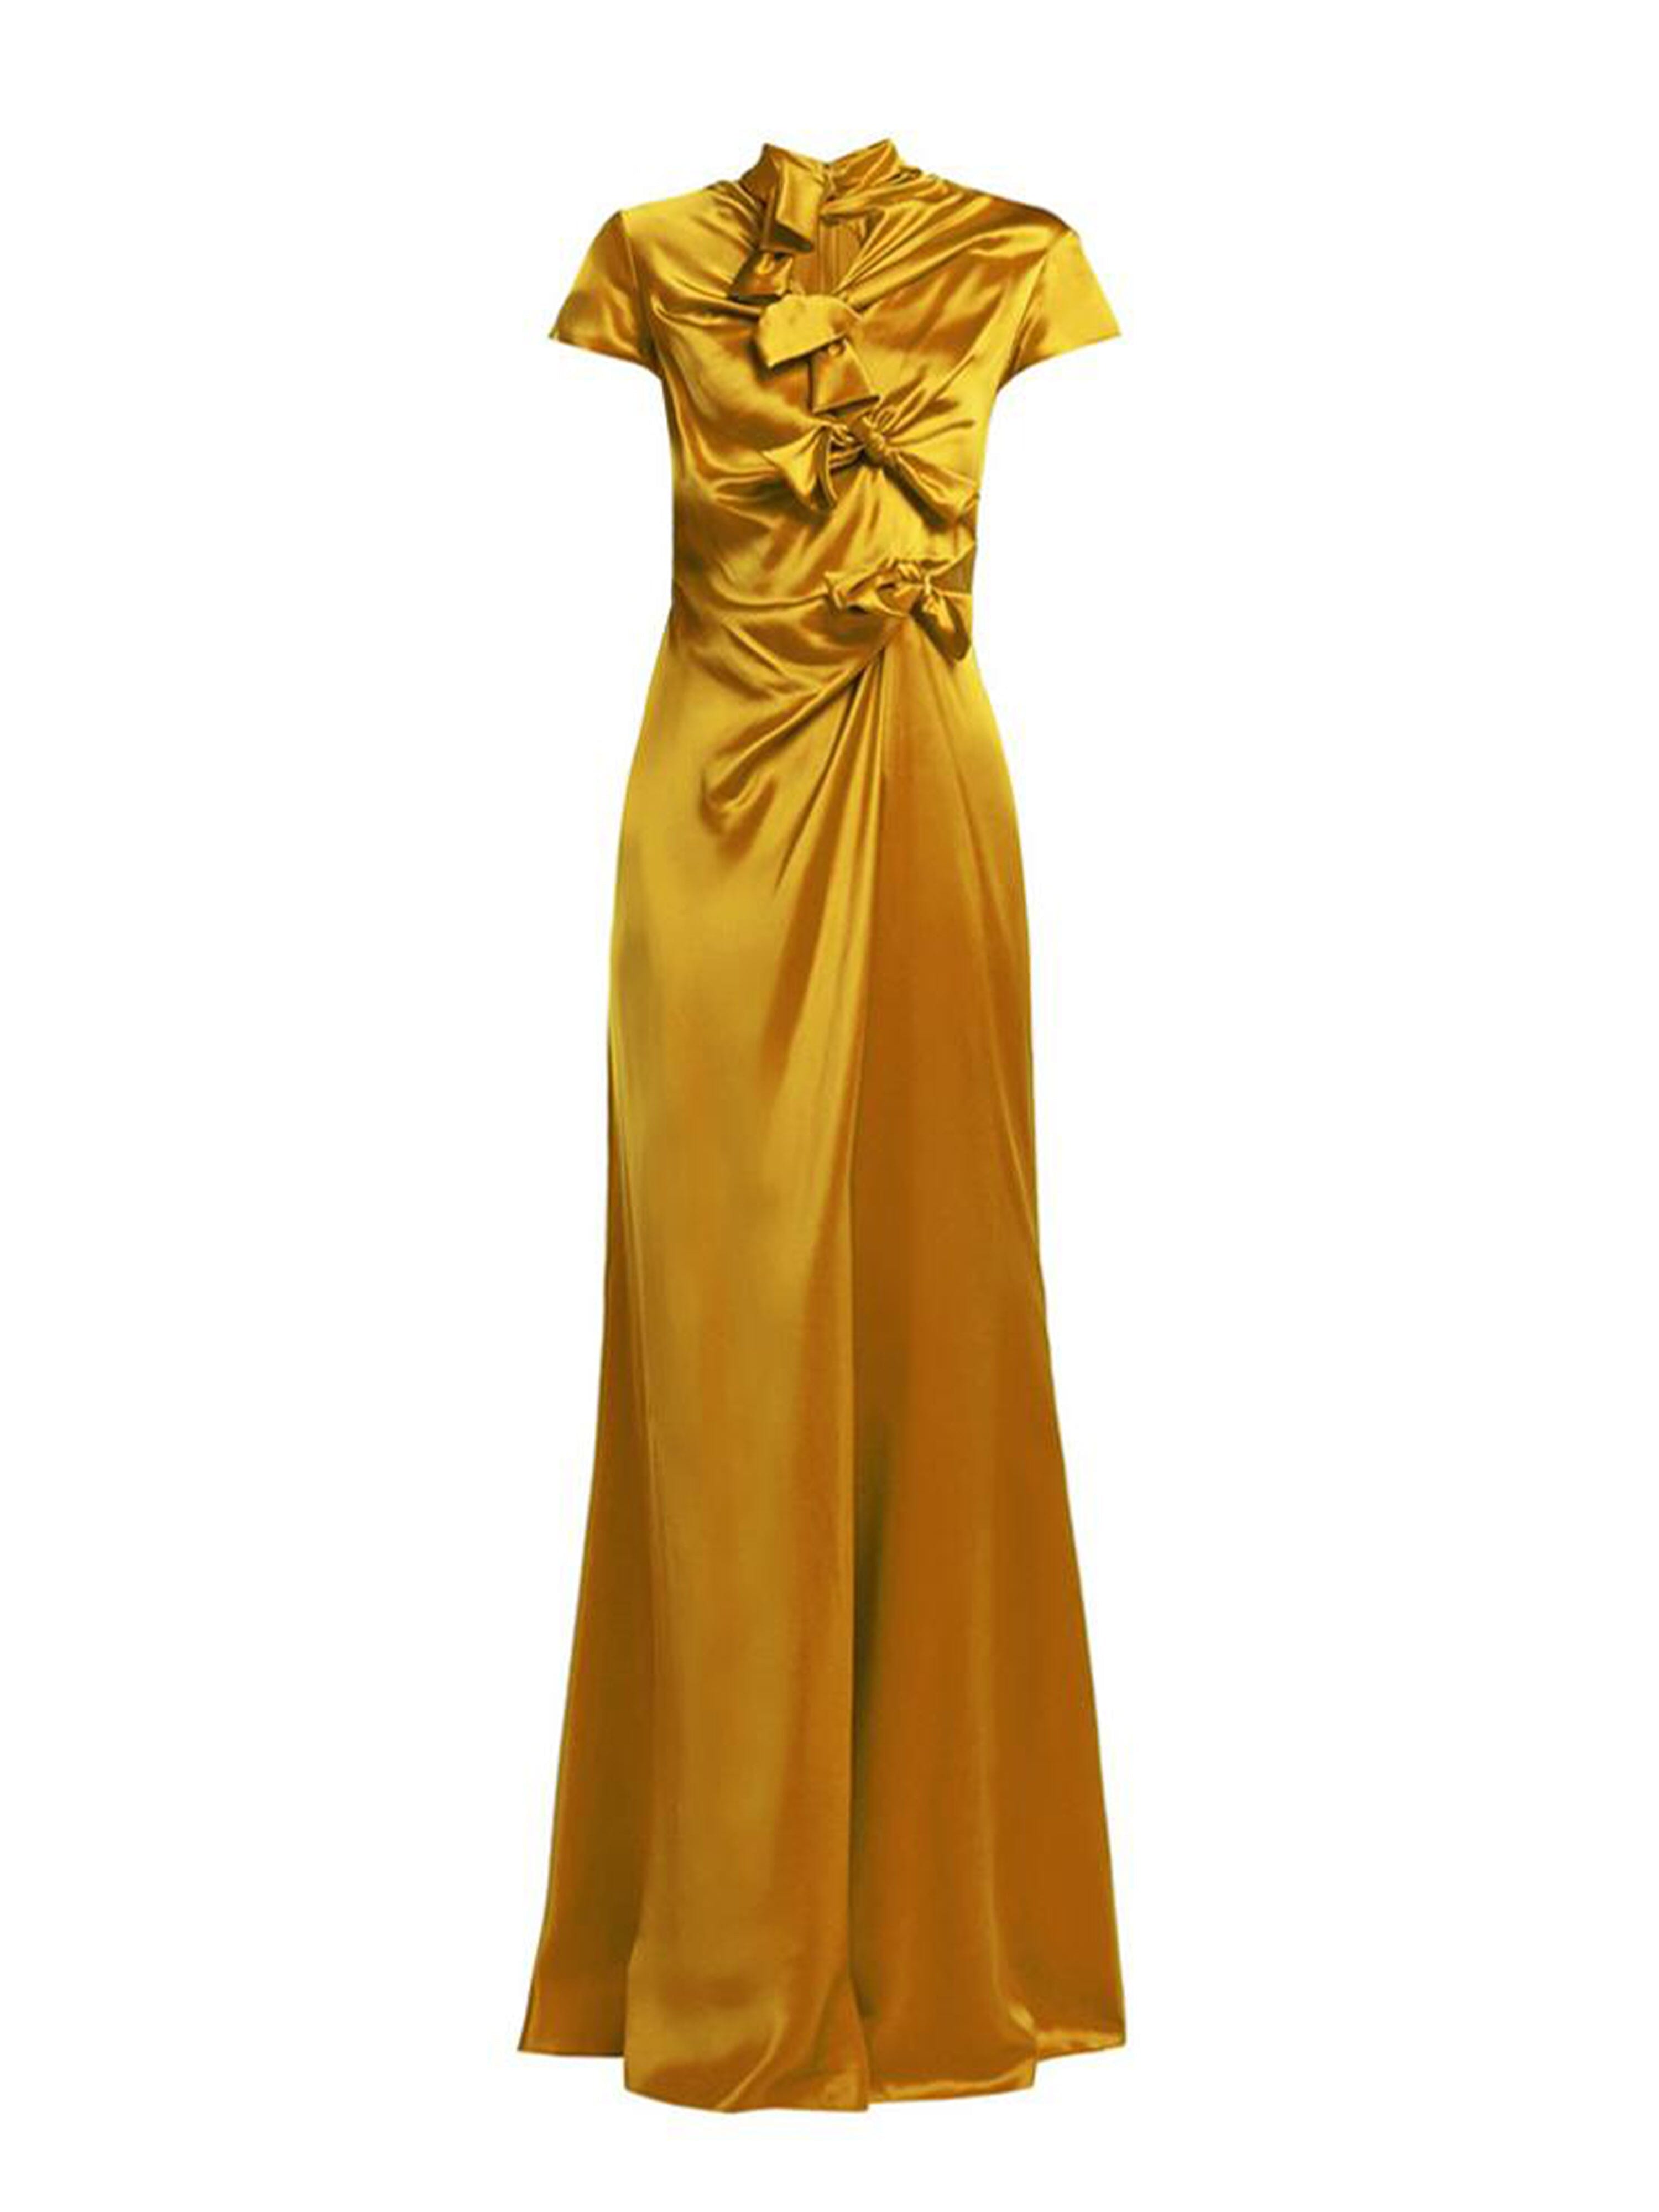 Kelly Long Dress in Gold